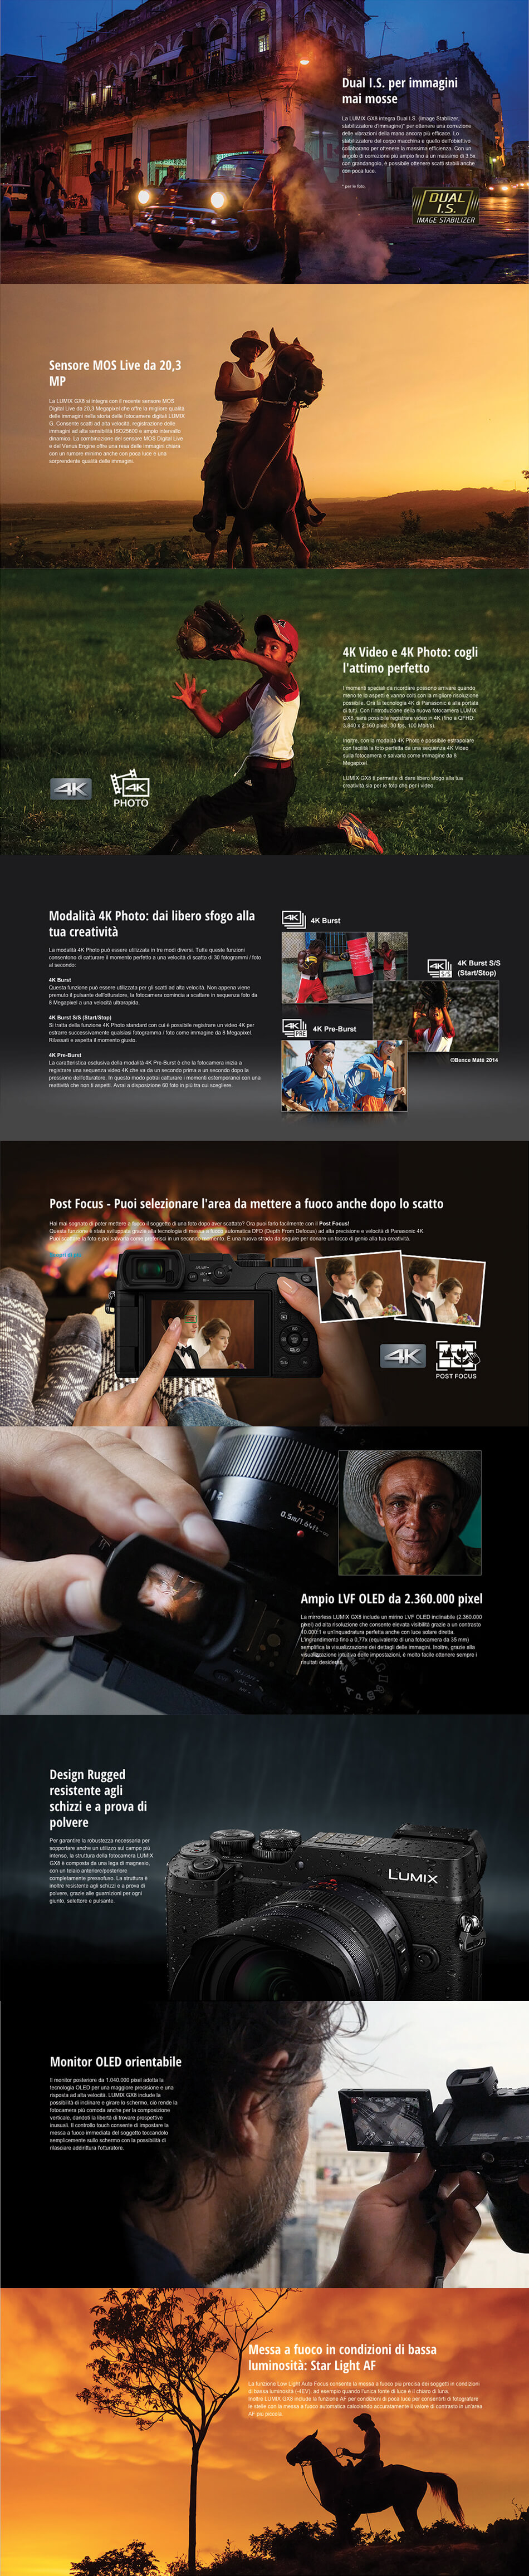 Template Panasonic Lumix GX8 + 14-42mm f/3.5-5.6 Nero